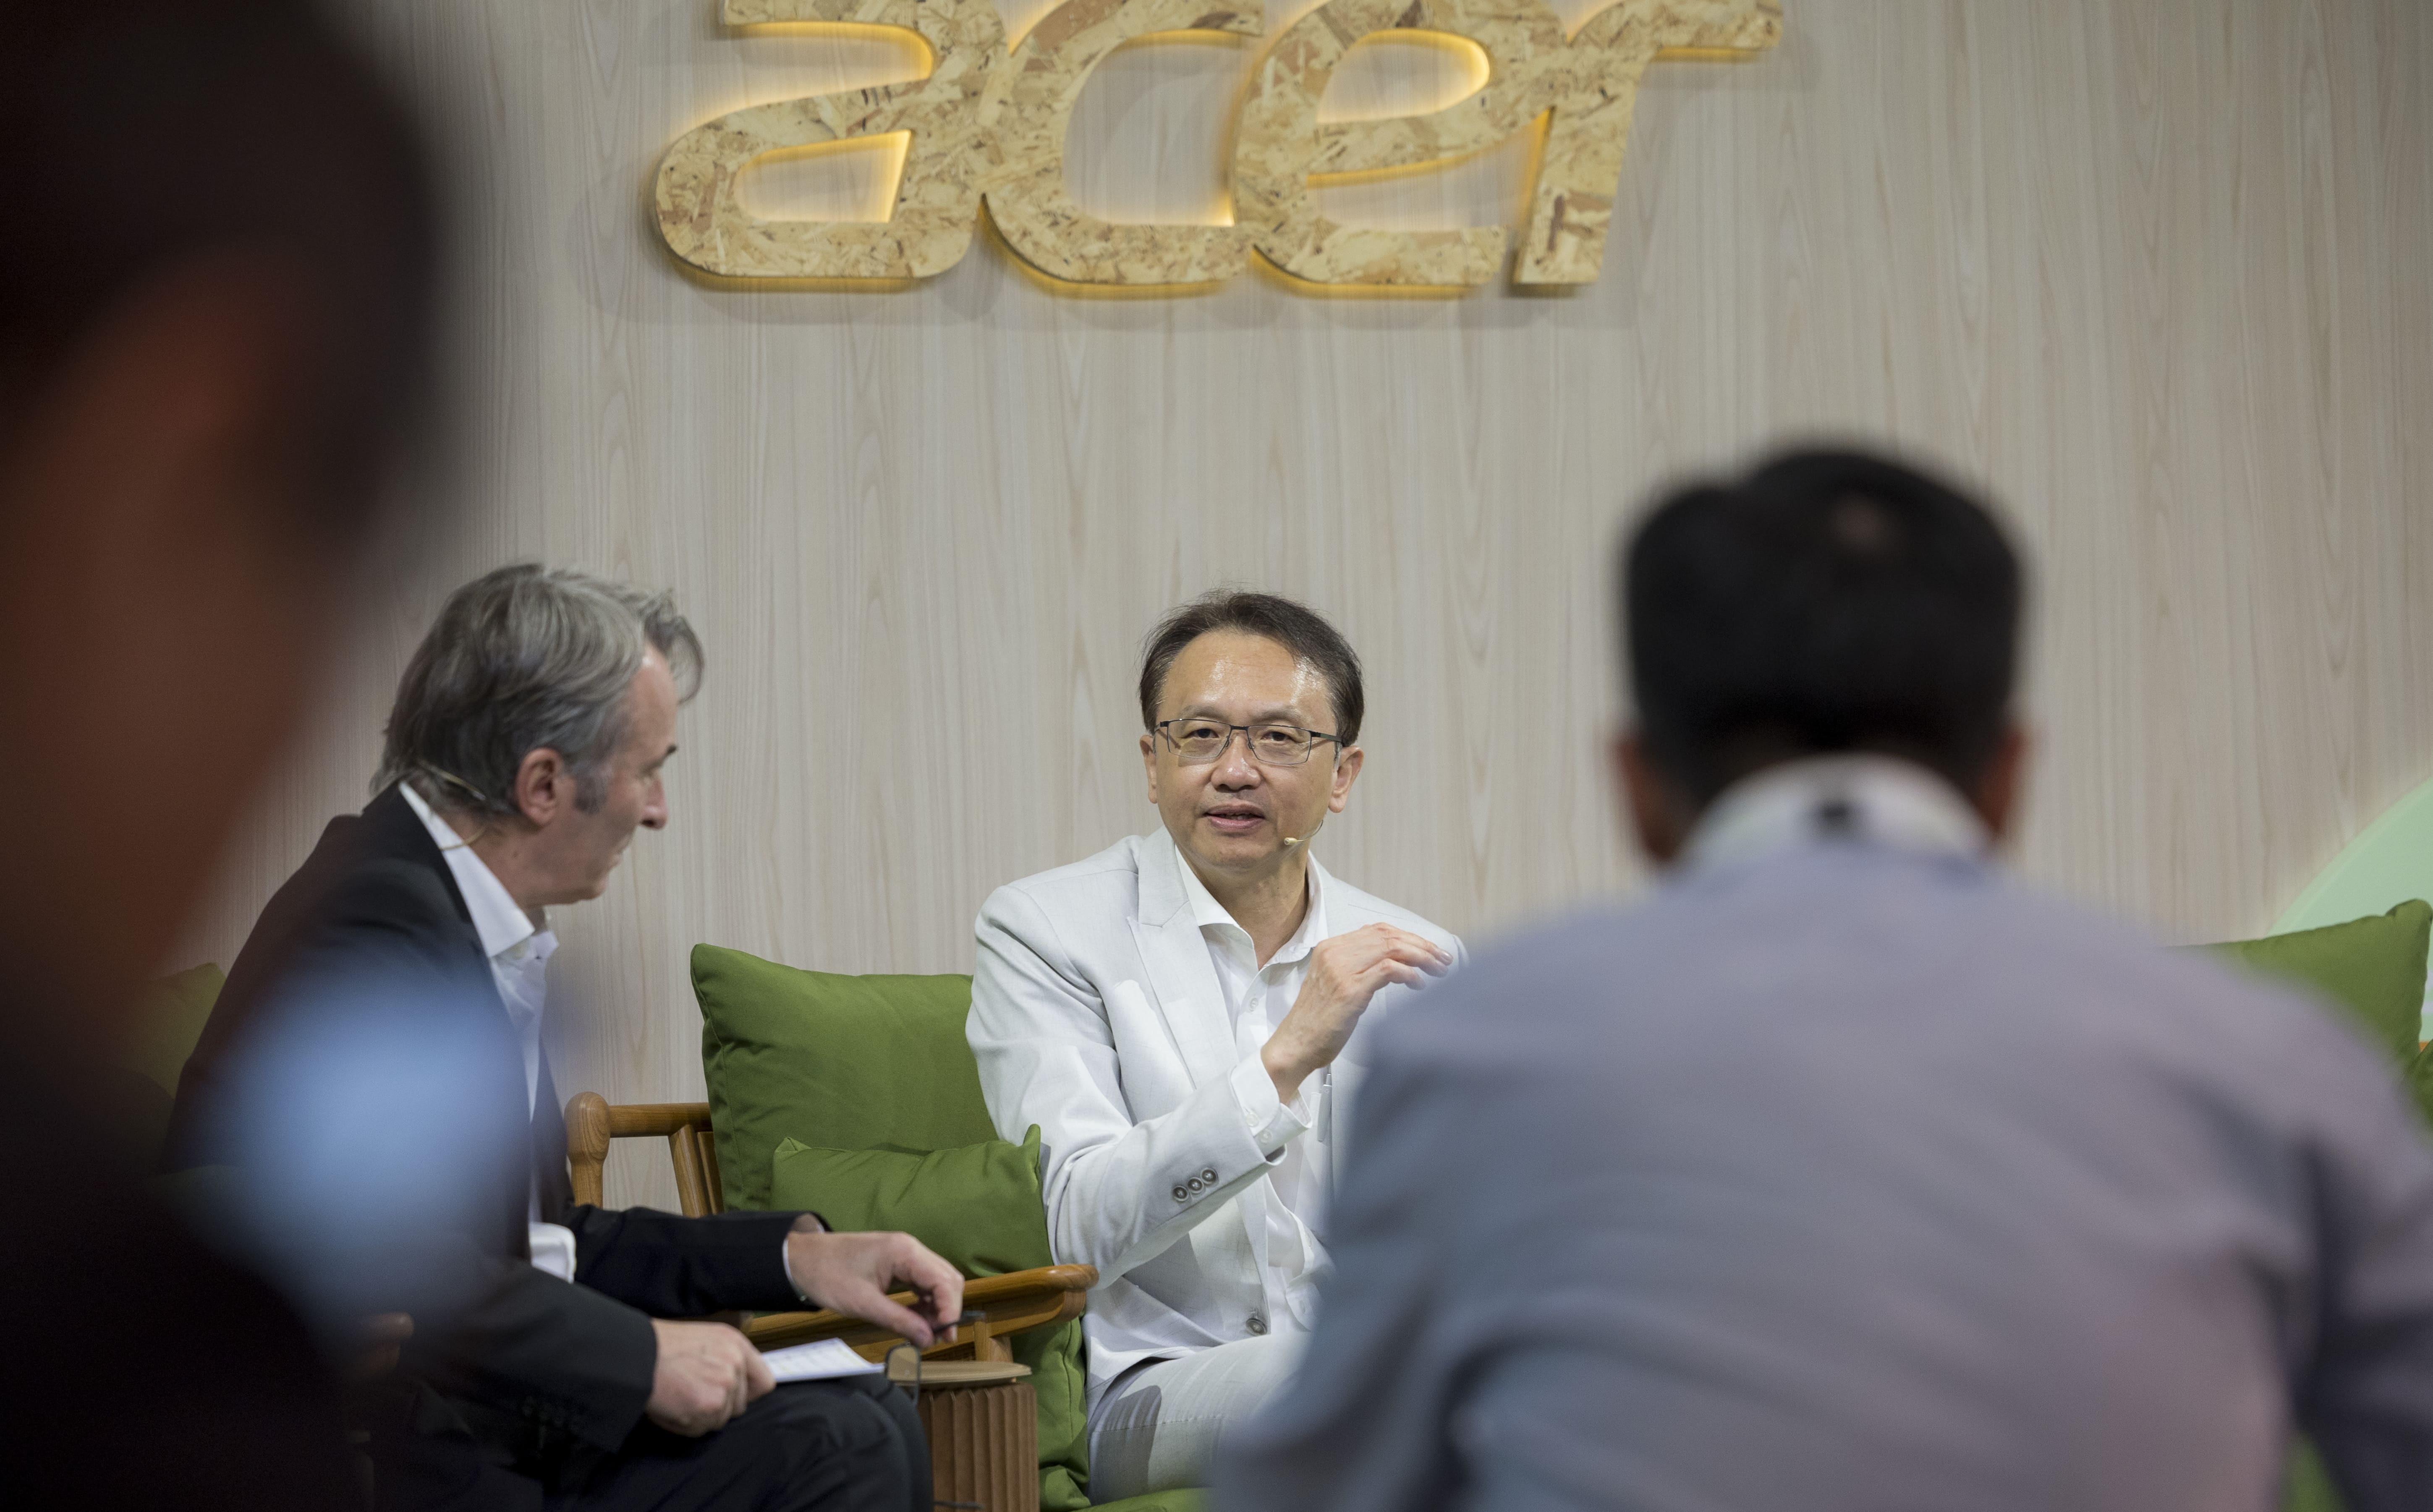 Acer Memperkenalkan “Conscious Technology”, Visi Teknologi Ramah Lingkungan